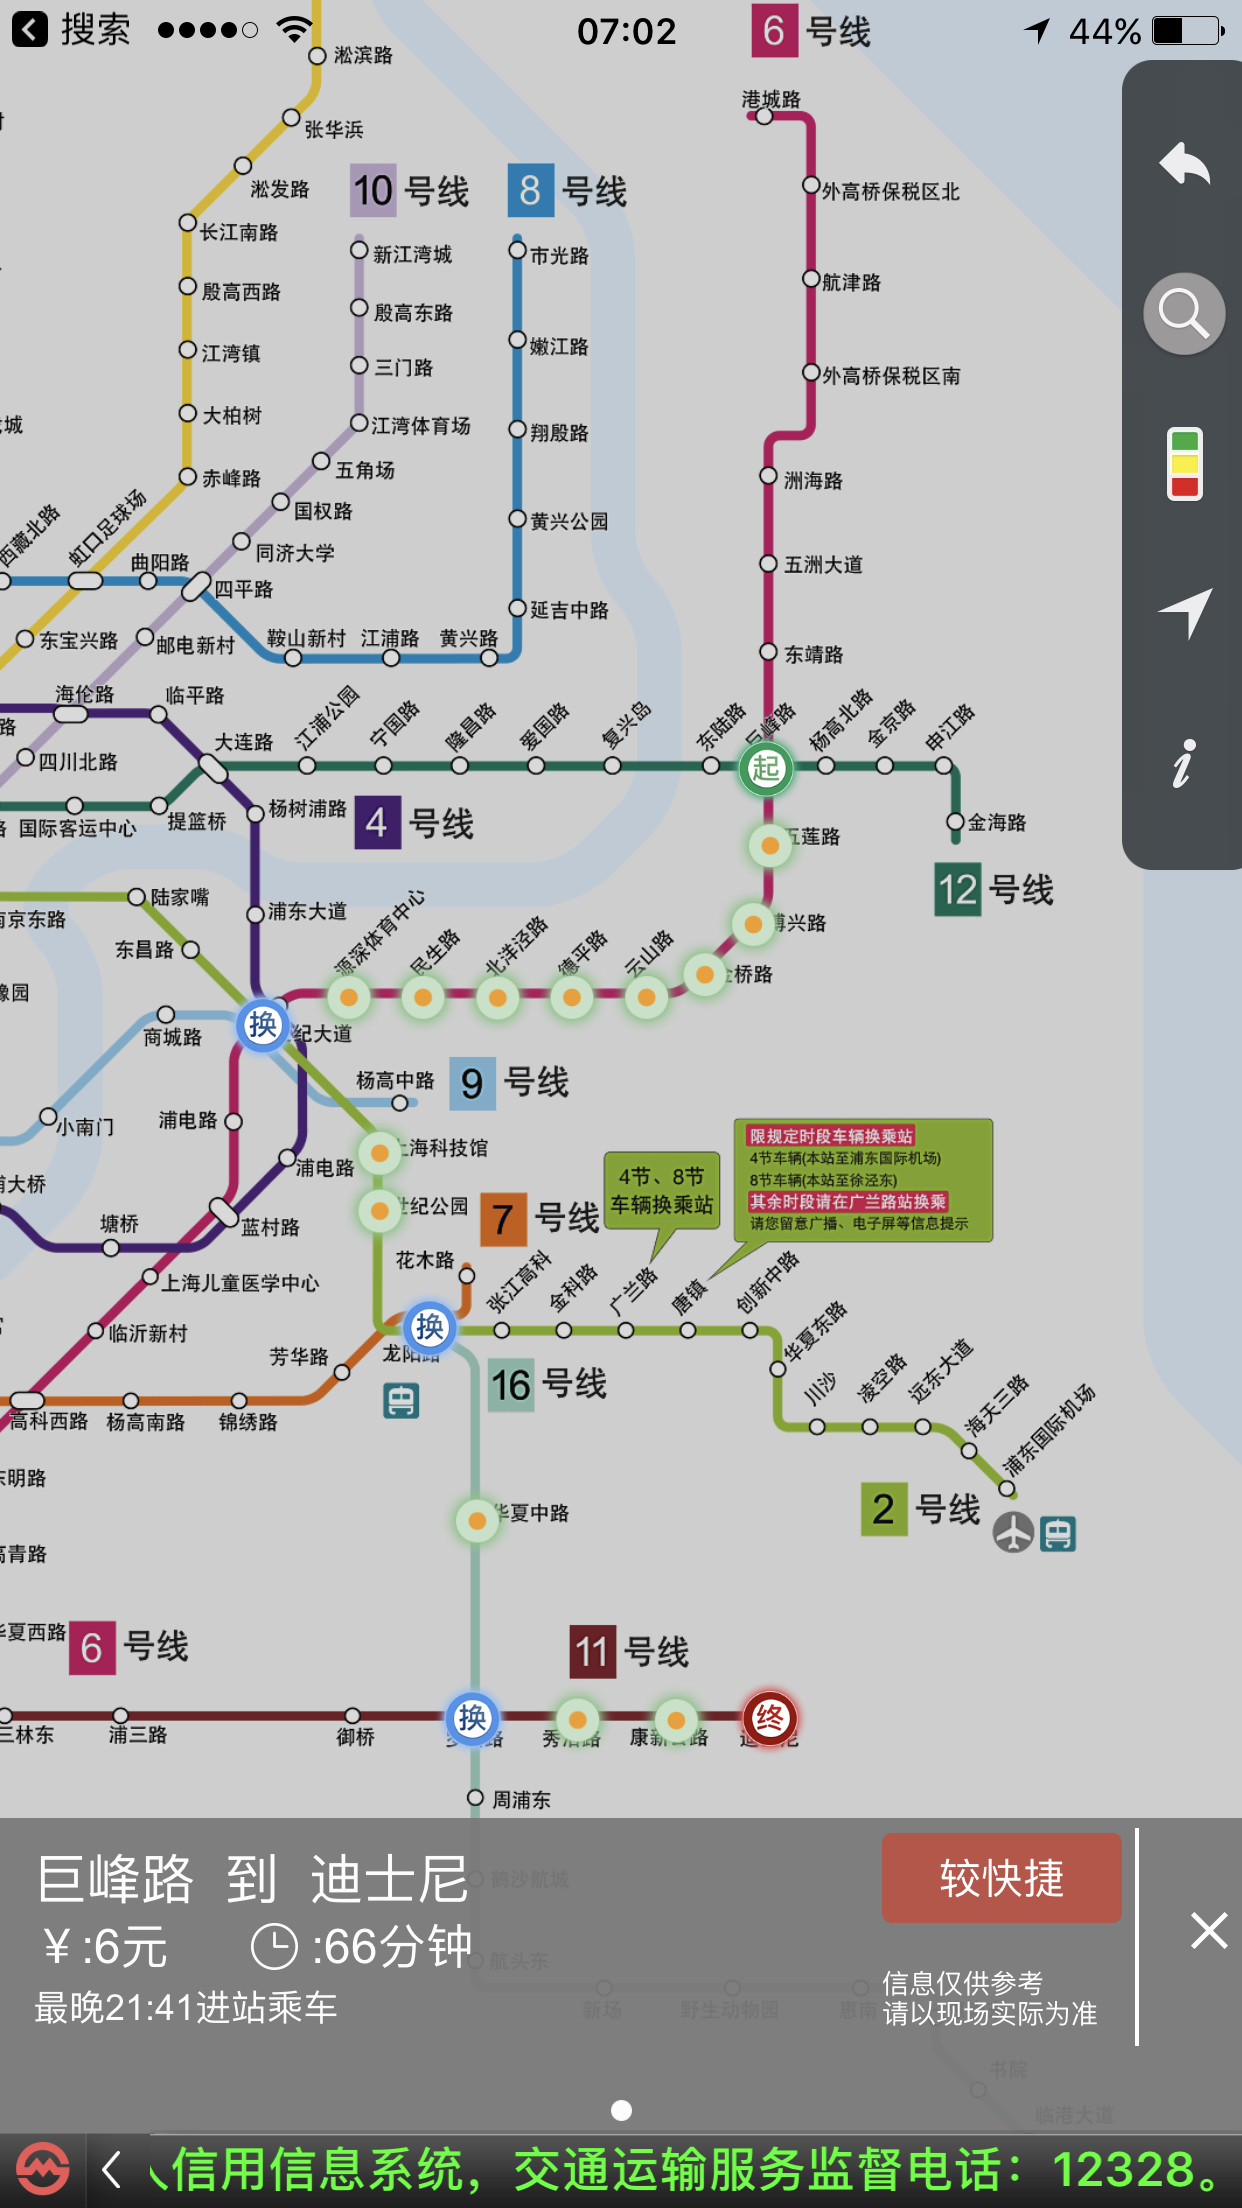 上海浦东新区巨峰地铁站离迪士尼有多远?